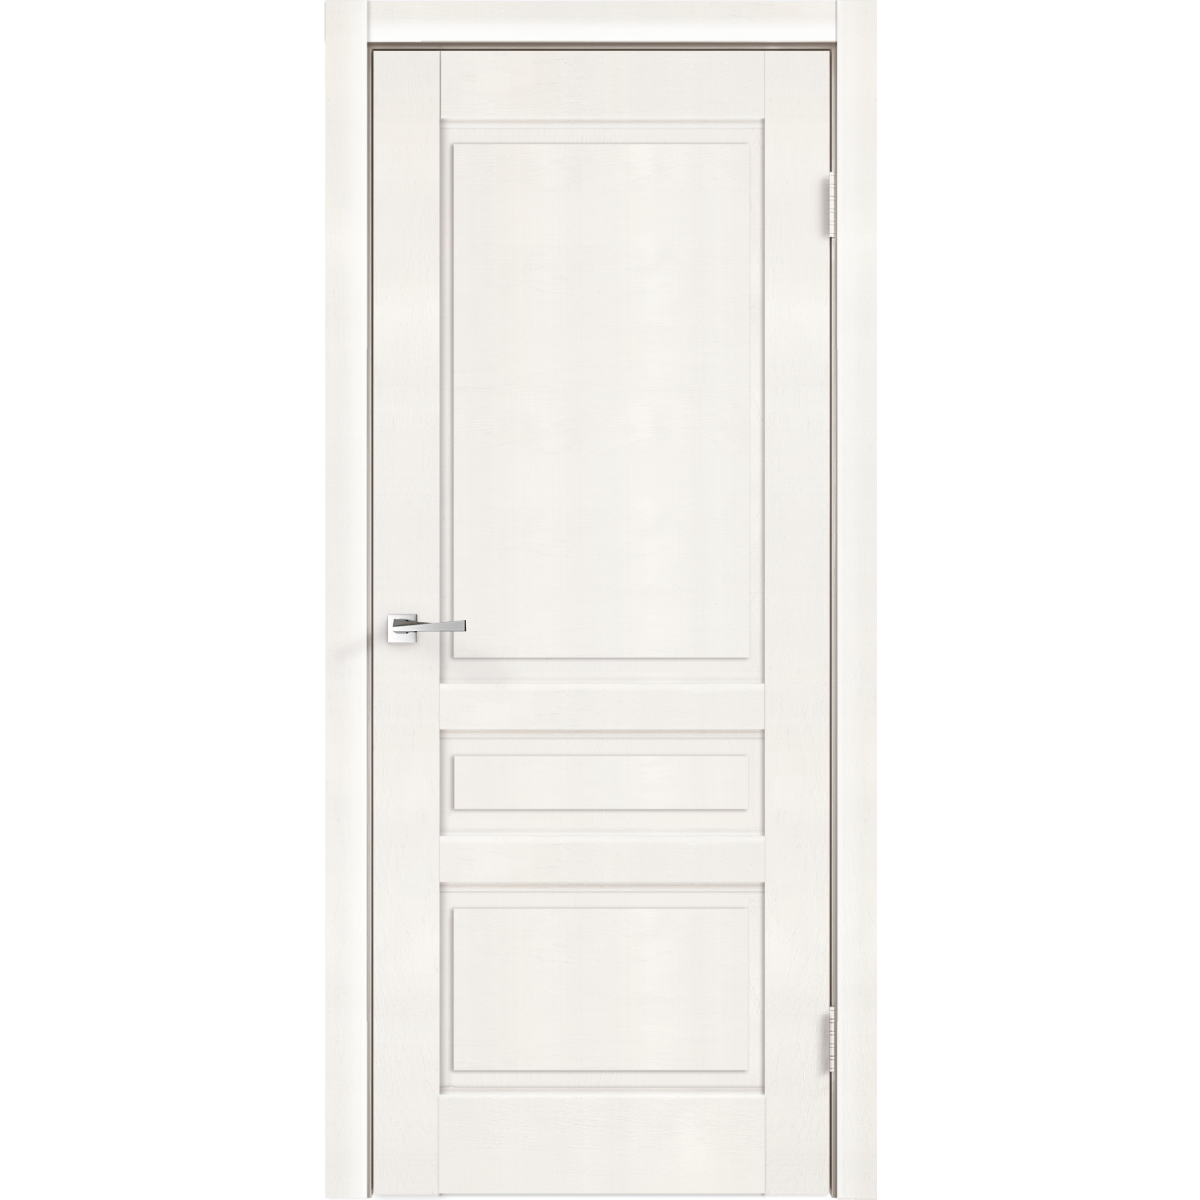 Дверь межкомнатная глухая «Летиция», 60x200 см, ПВХ, цвет дуб пломбир, с фурнитурой